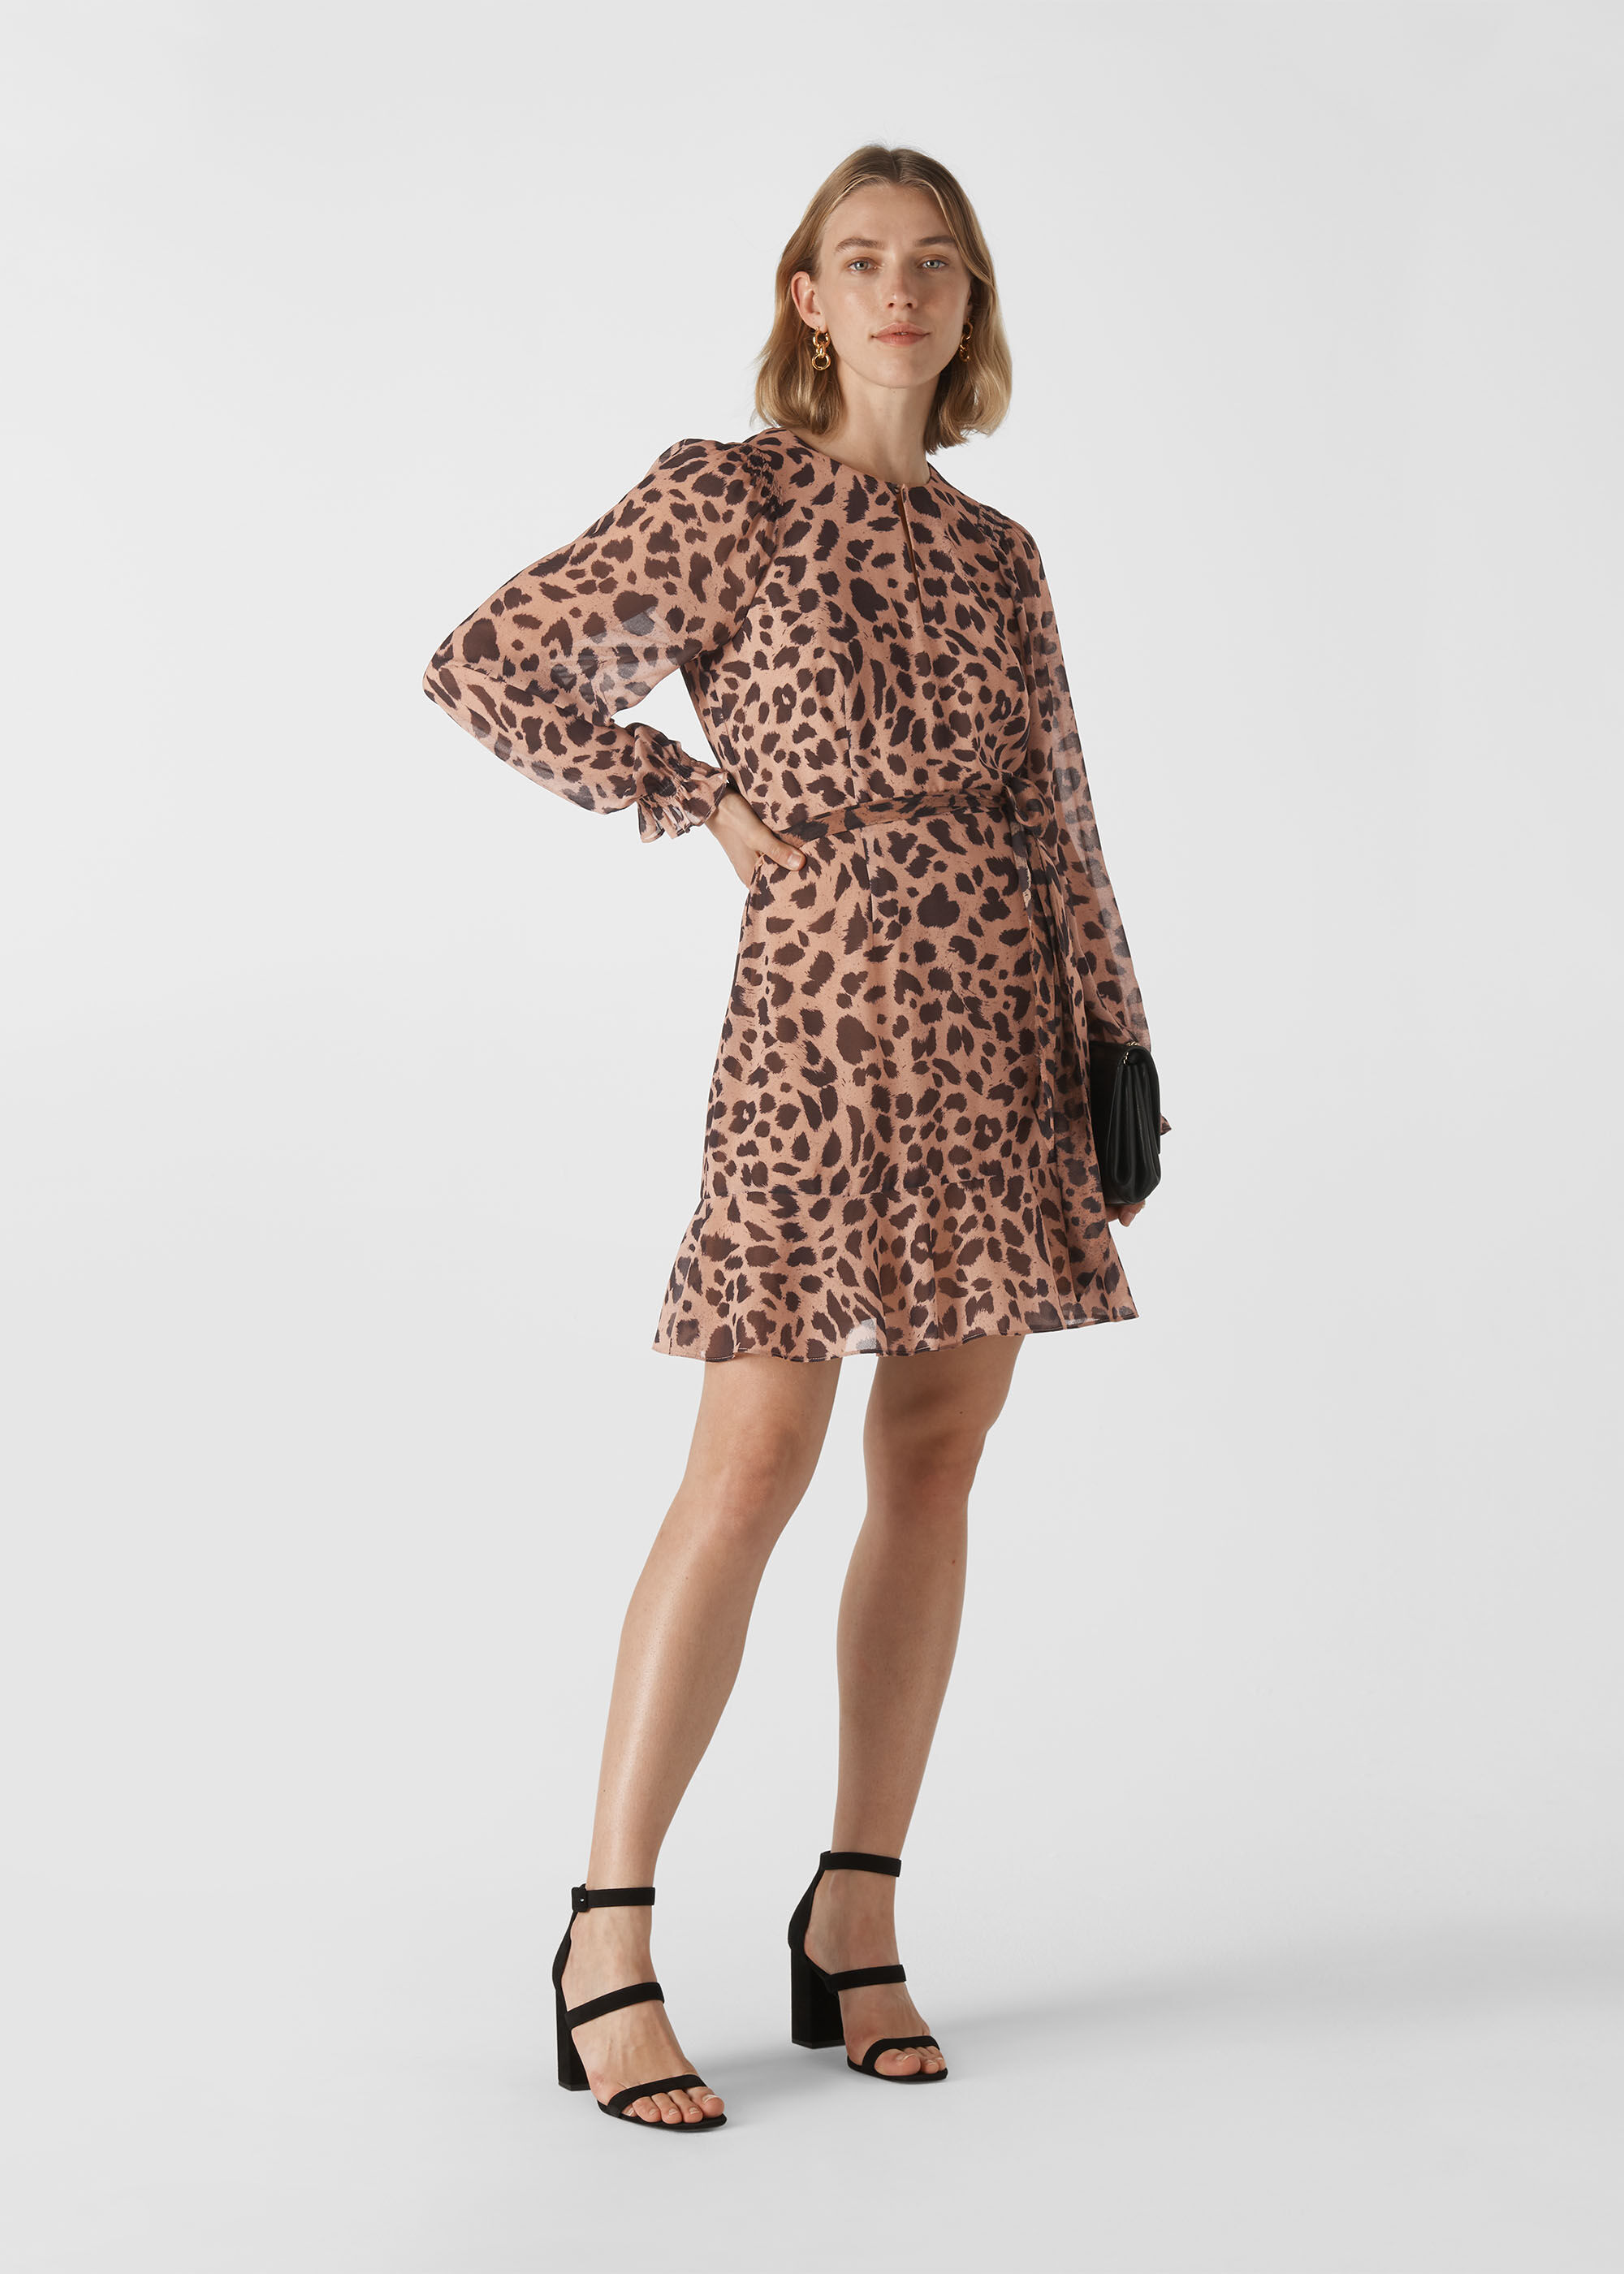 dress leopard print